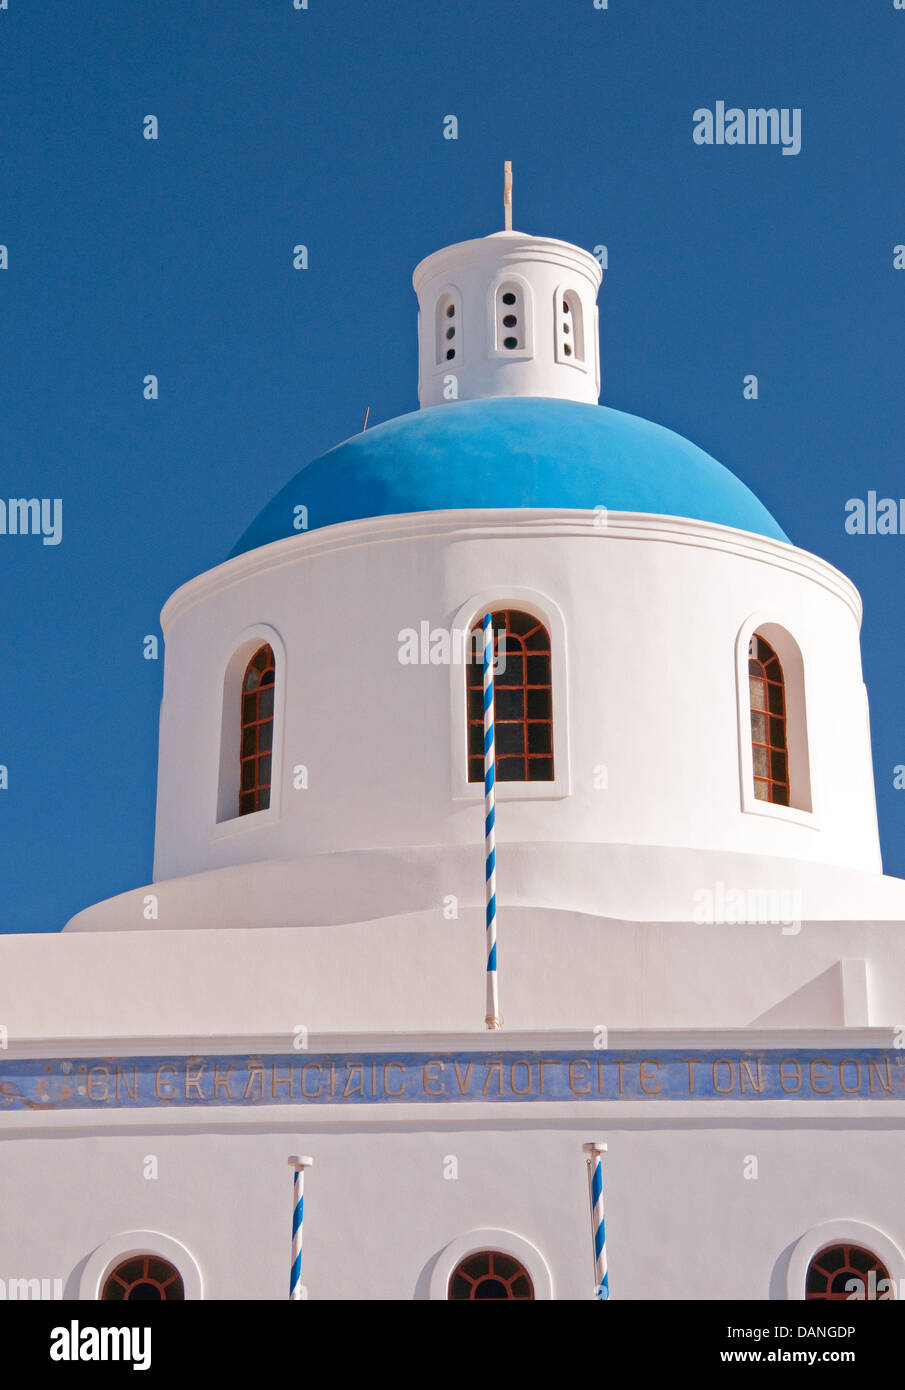 Dôme bleu de l'église, l'Oia, Santorin, Grèce Banque D'Images